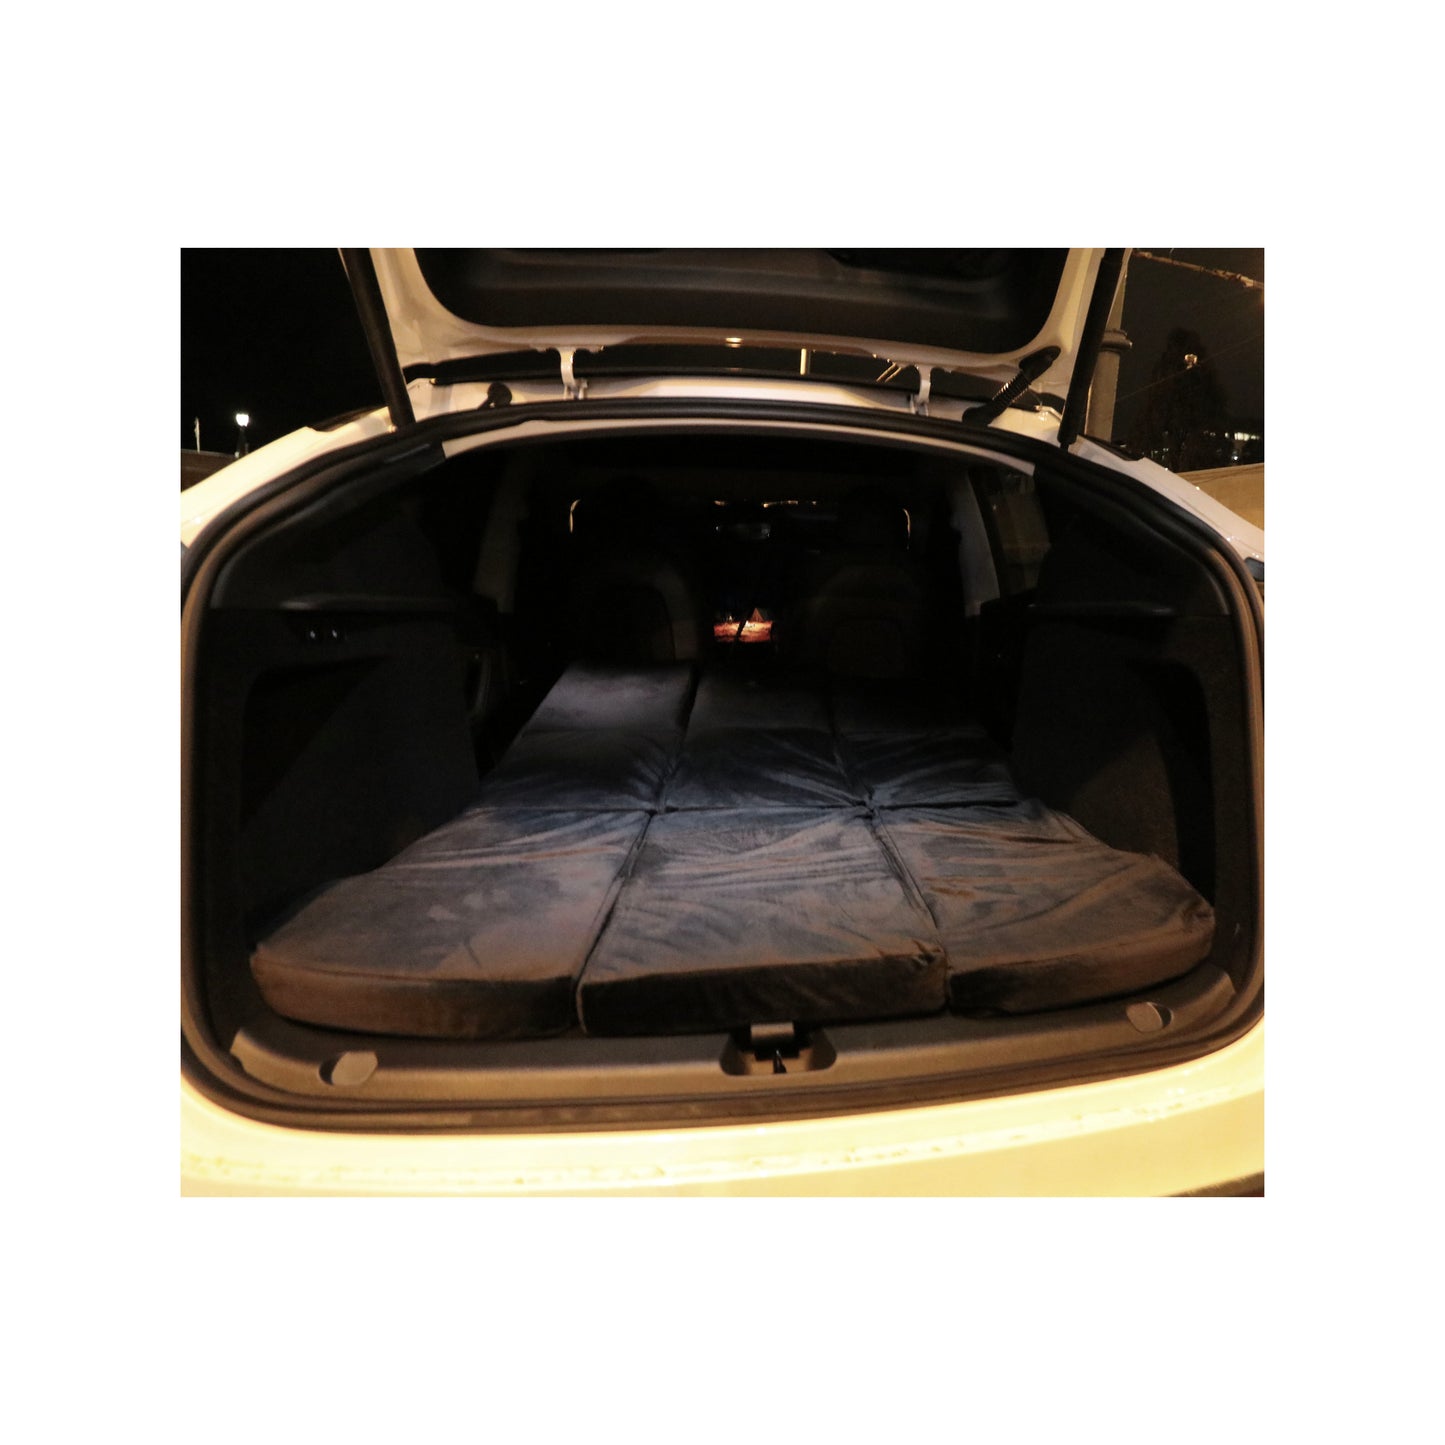 EV-MATS Deluxe CAMP SET Tesla Model Y için Tesla yataklı su geçirmez arka bagaj için çanta, saten çarşaf, yorgan, 2 yastık kılıfıyla 2 yastık, 11 gölge ve Tesla Model Y ön bagaj için 2 su geçirmez çanta